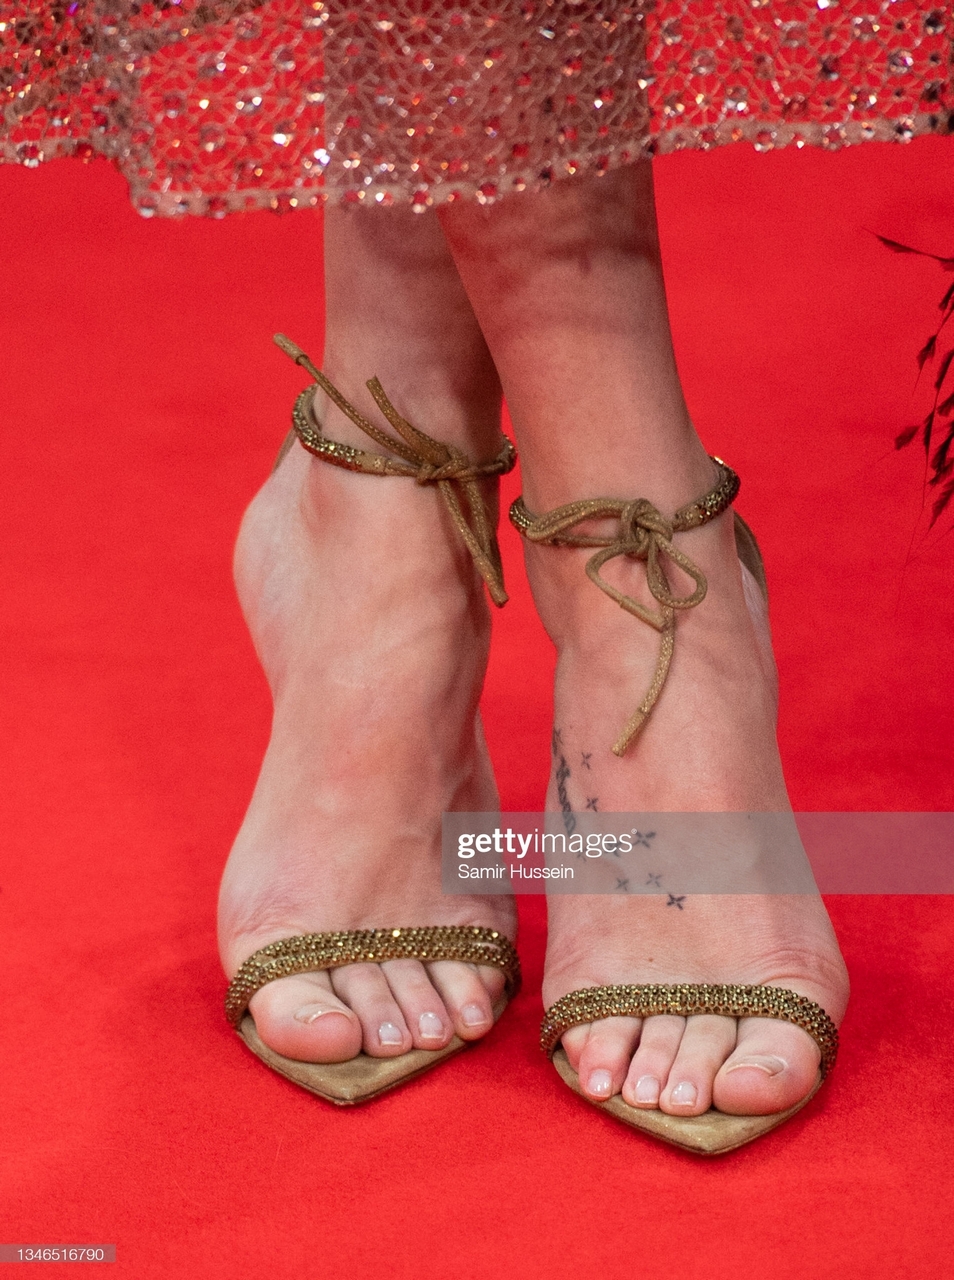 Dakota Johnson Feet